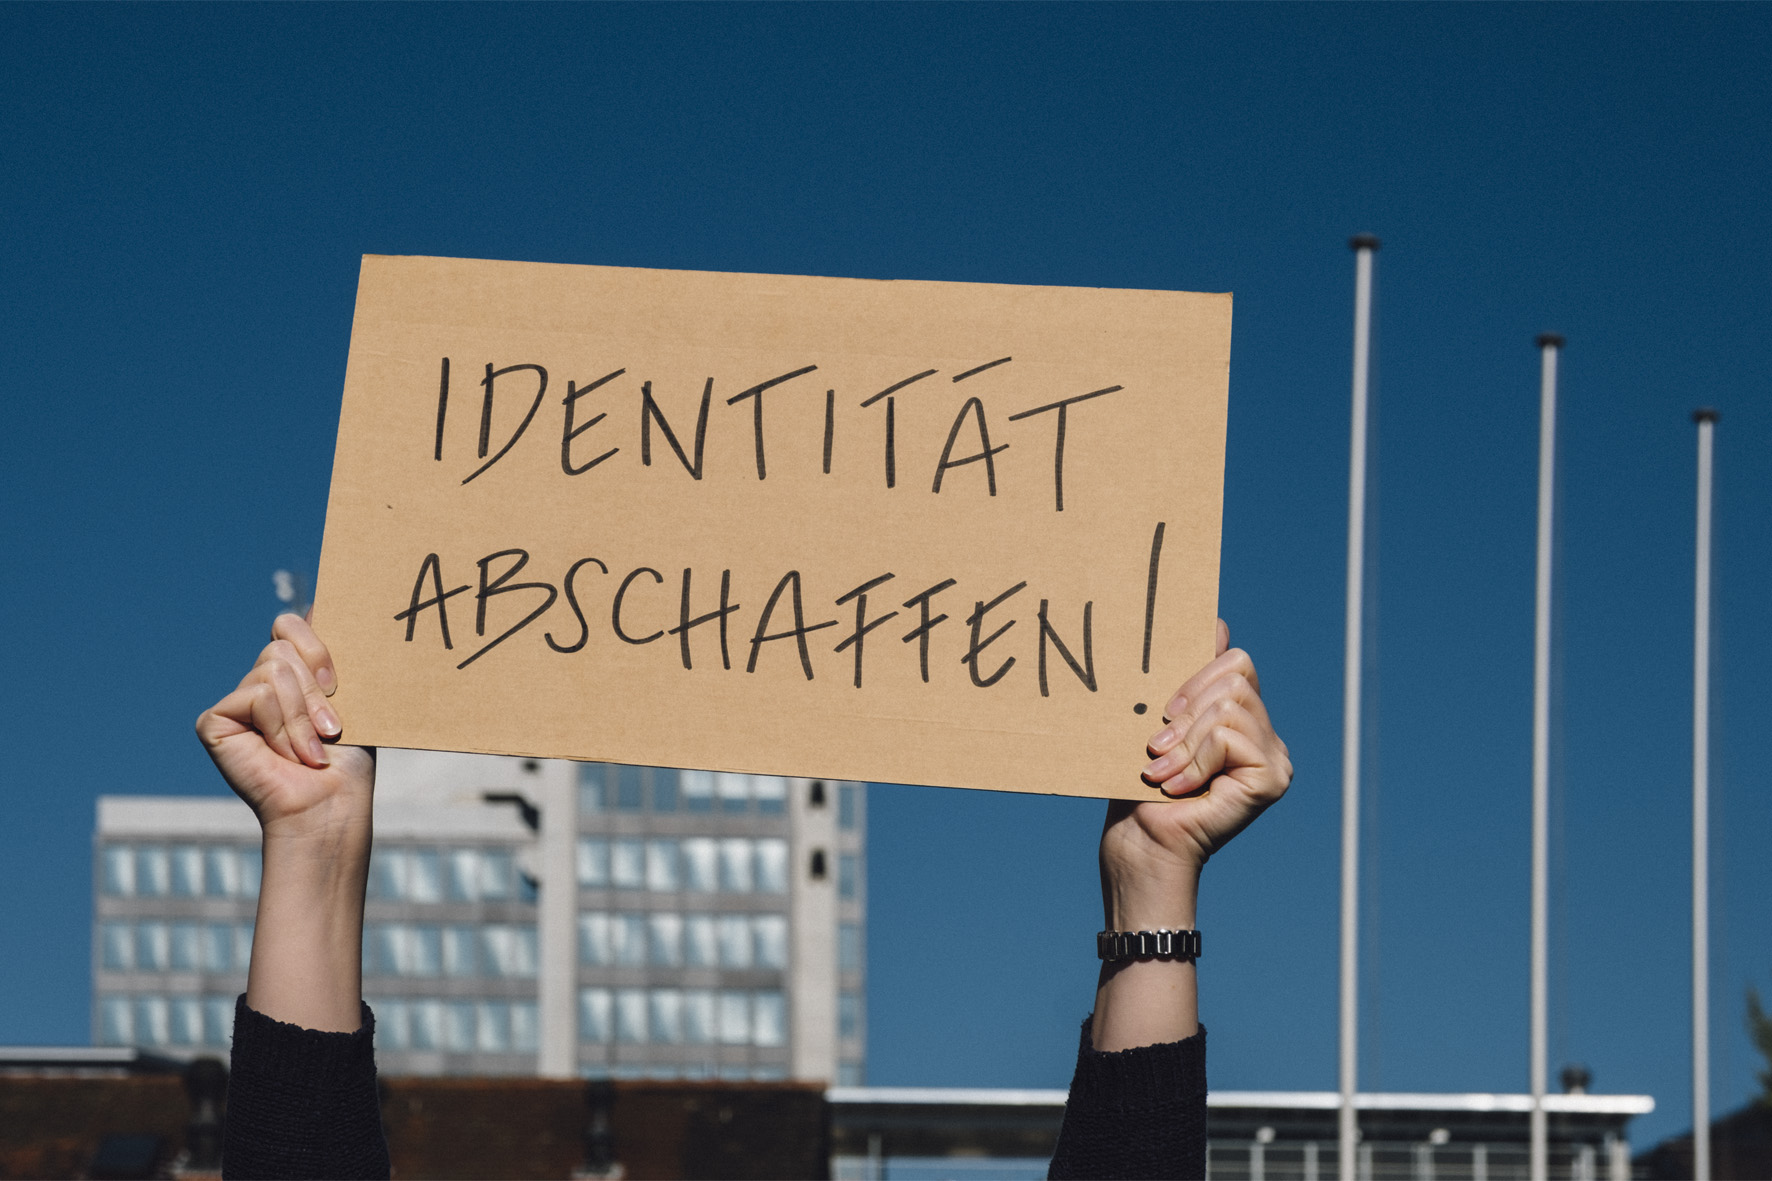 Symbolbild mit Person, die Schild mit dem Text "Identität abschaffen" hochhält.